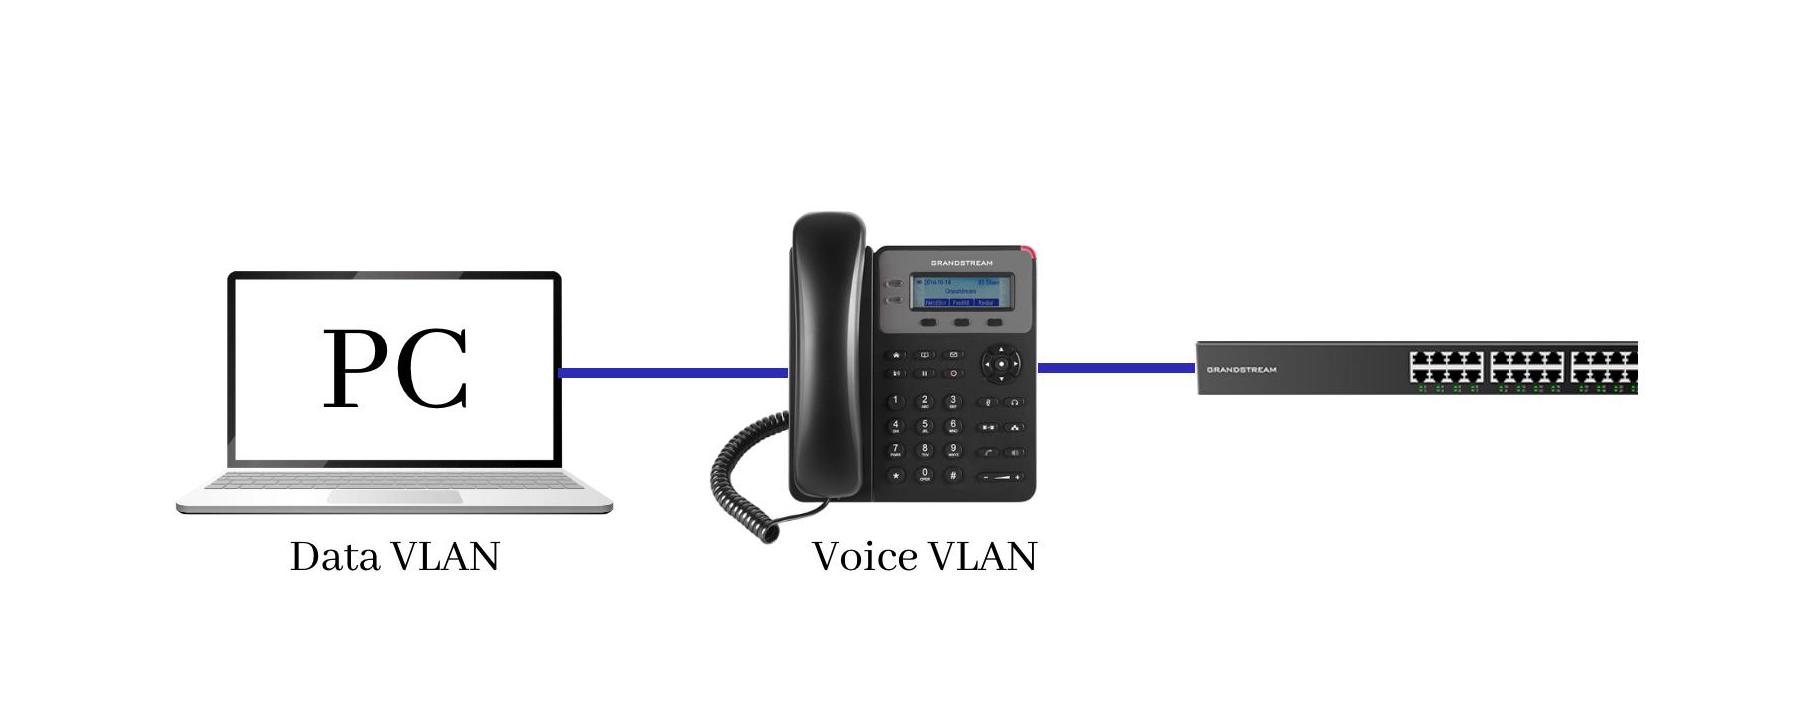 Auto Voice VLAN in Grandstream GWN780X switches